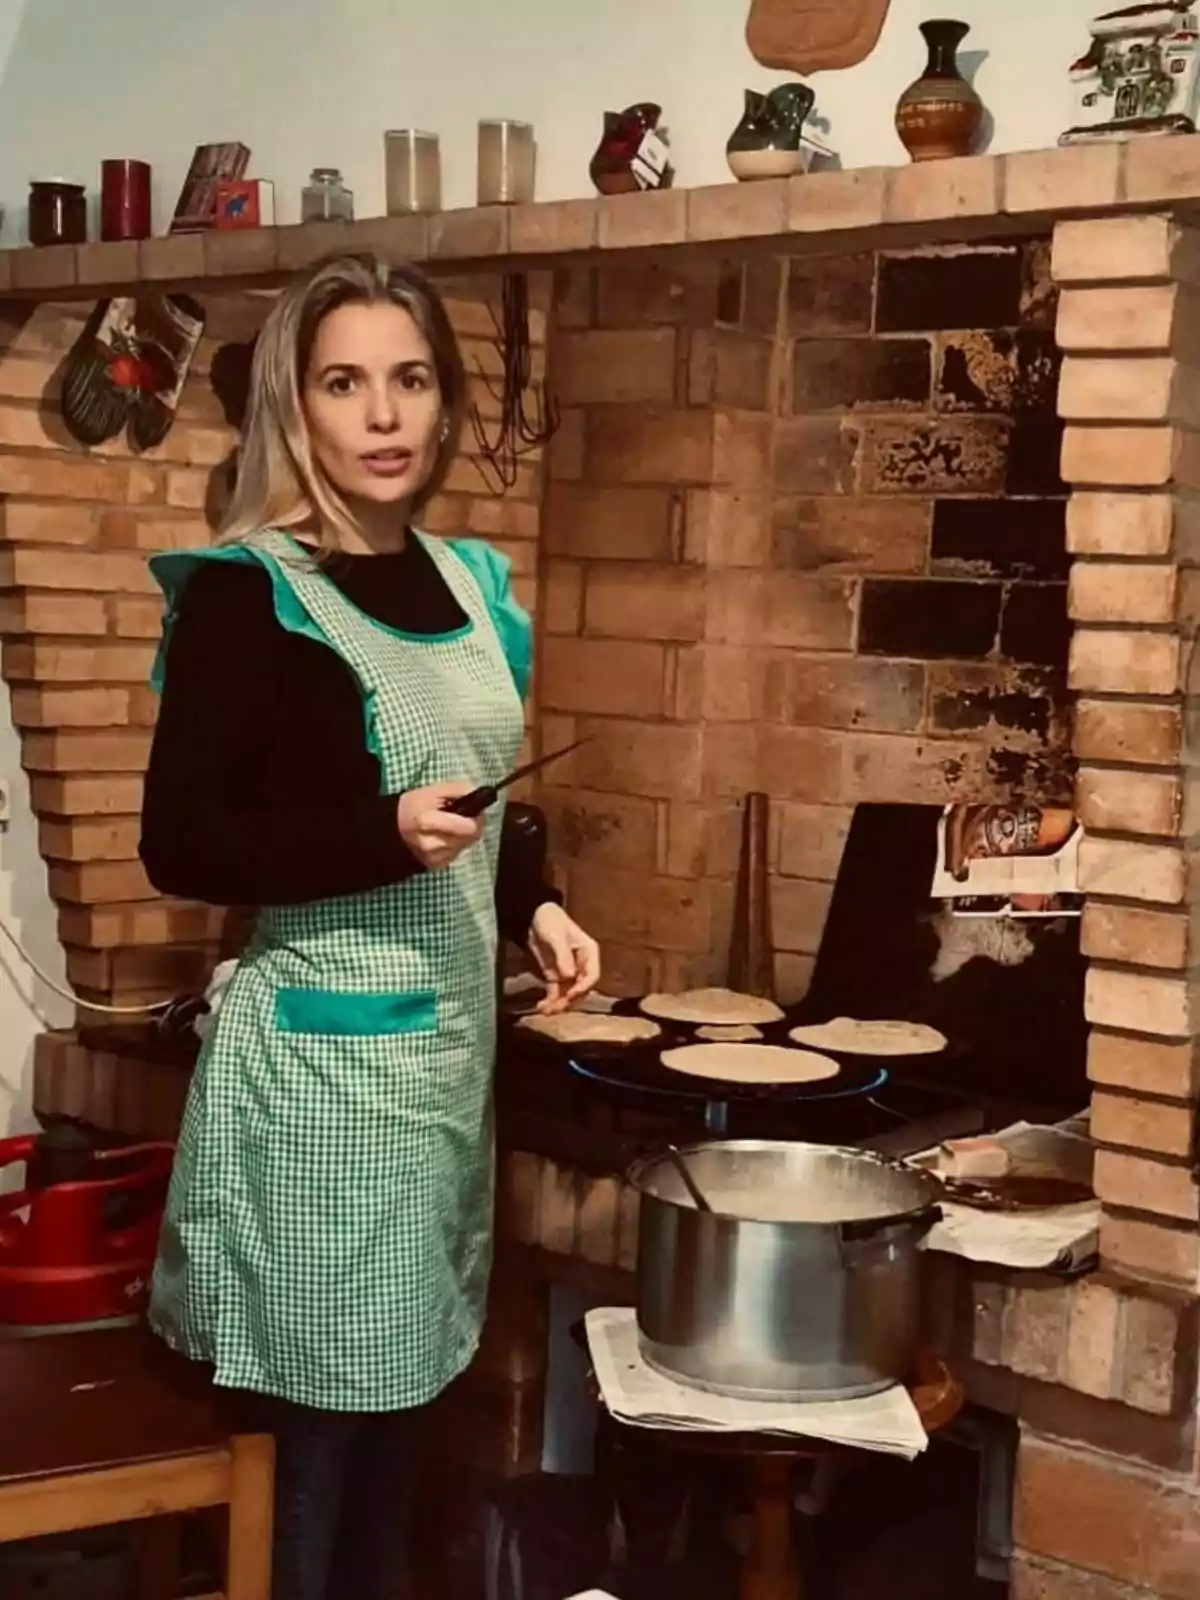 Christine Cambeiro con delantal verde cocina tortillas en una estufa de ladrillo, con una olla de metal en primer plano y varios objetos decorativos en la repisa superior. Post en Instagram el 7 de marzo de 2023